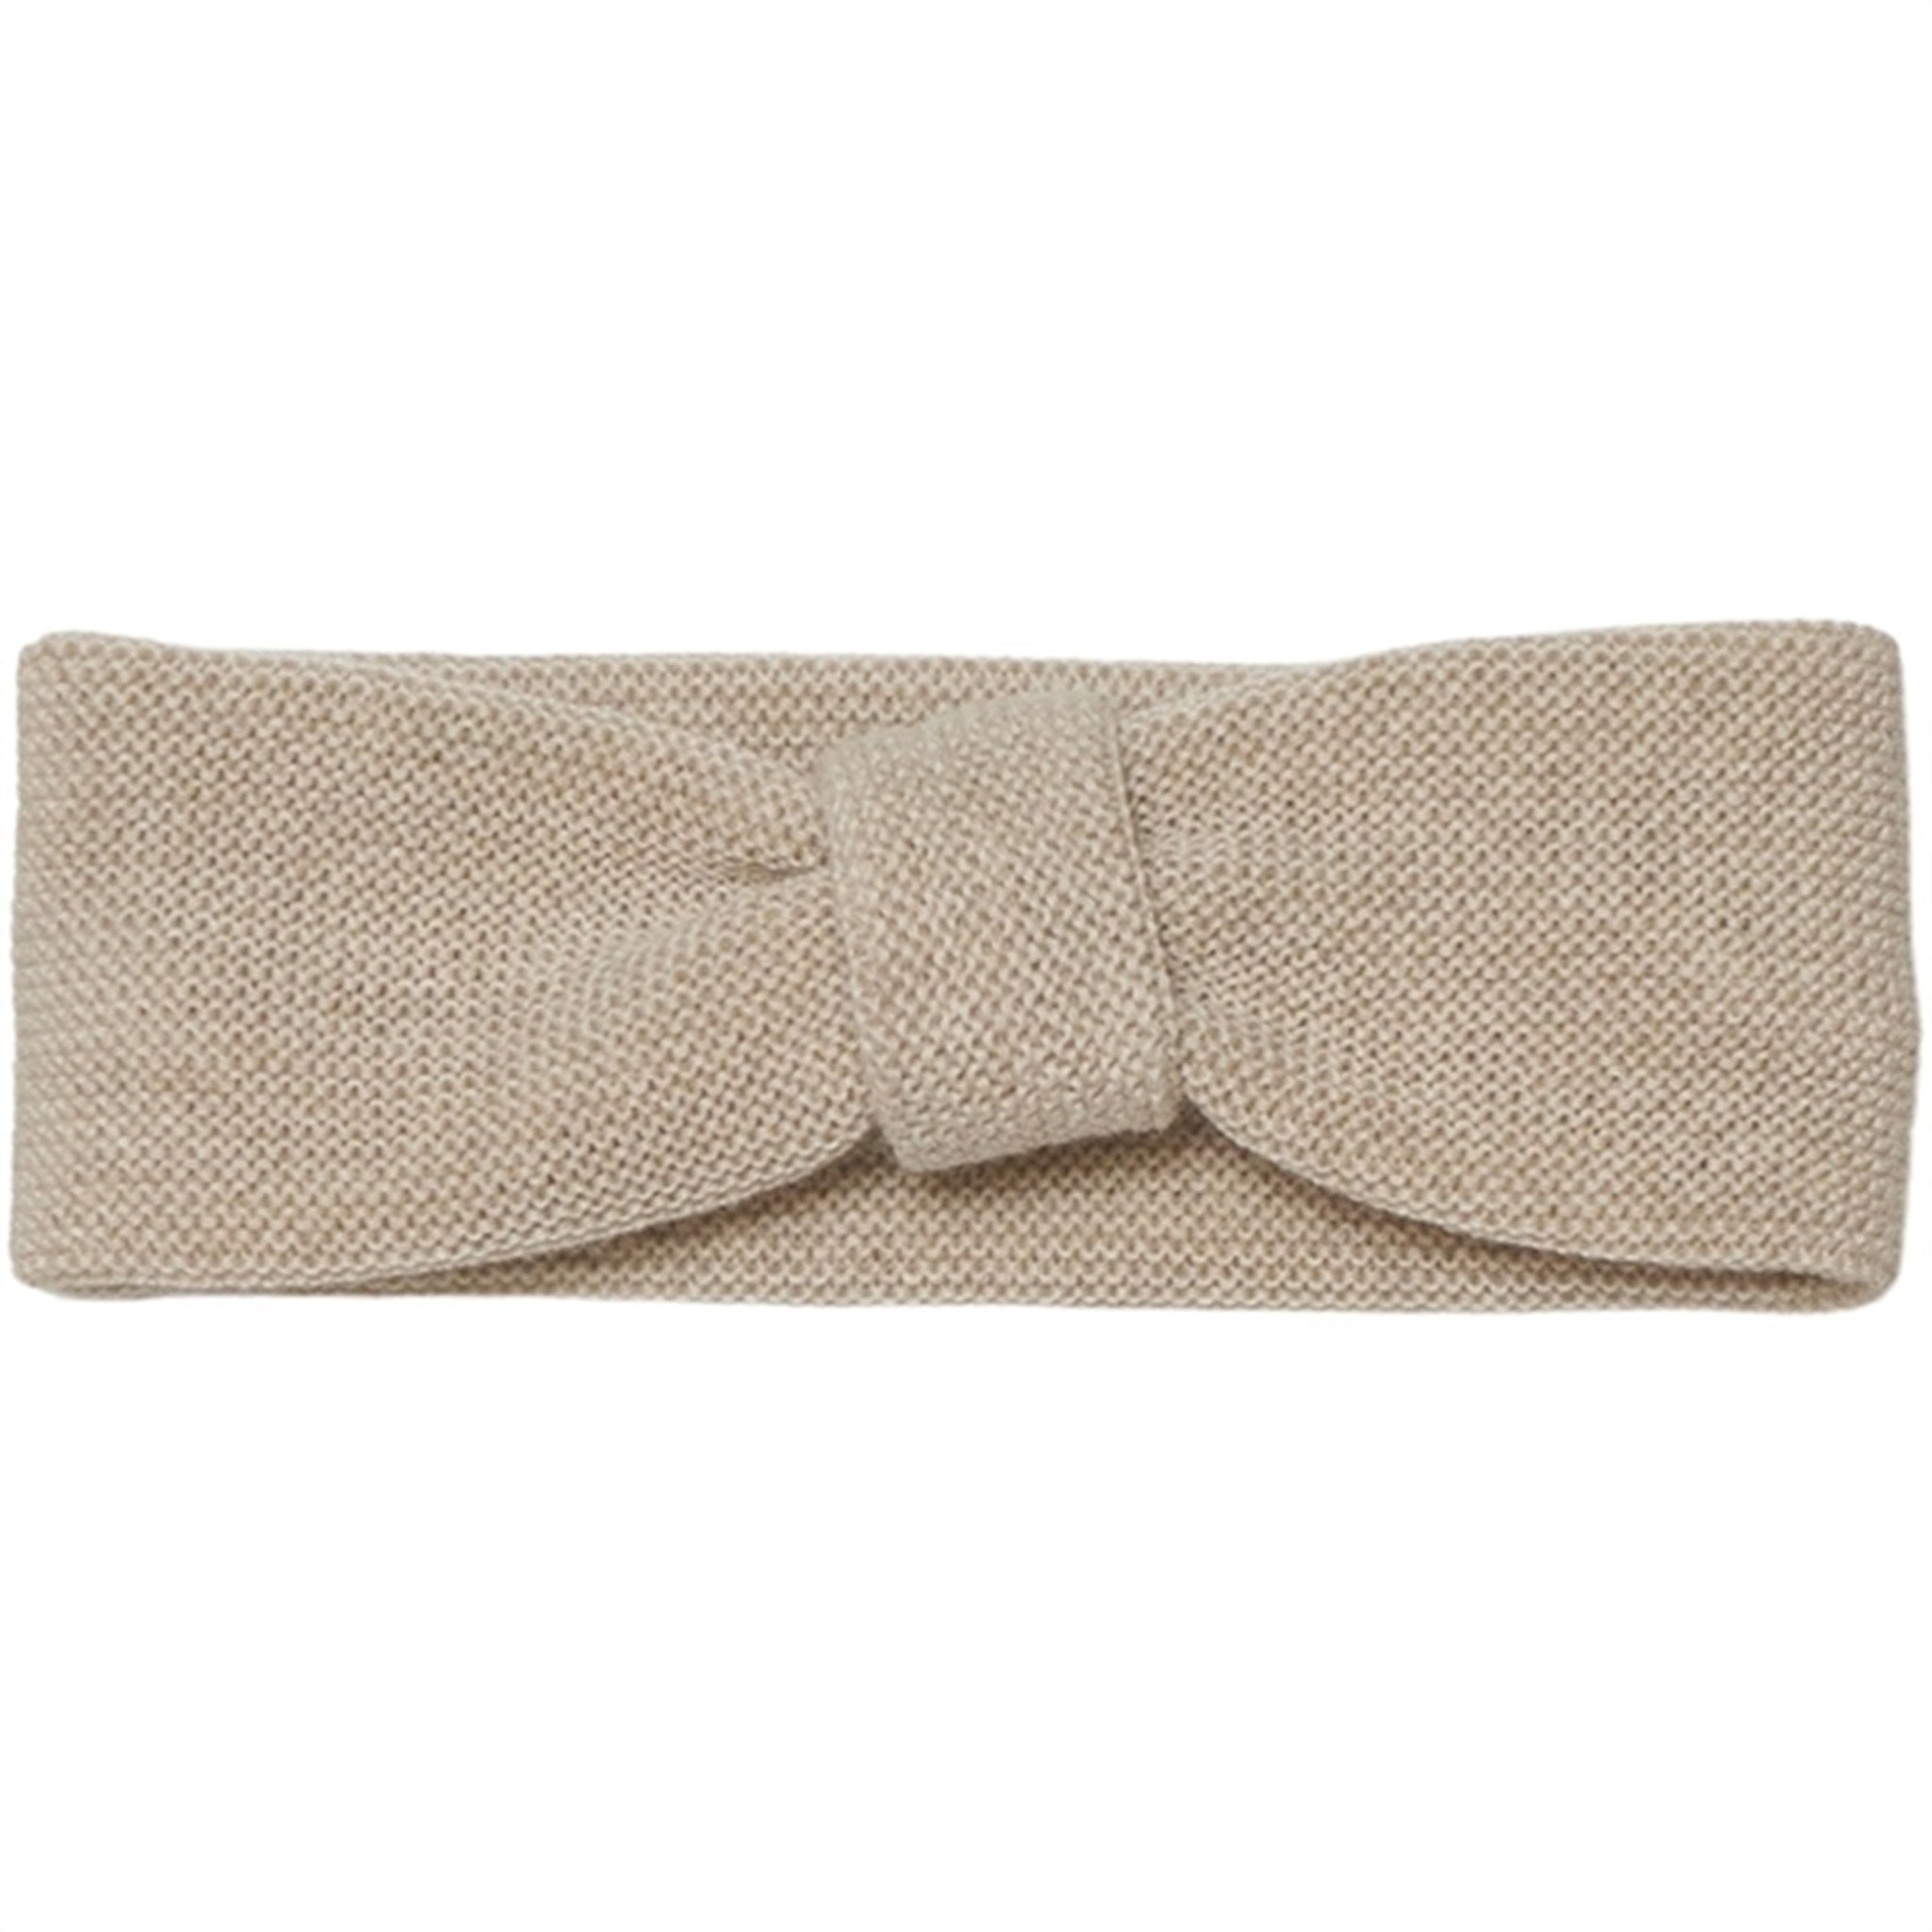 Huttelihut Headband Wool Knit Head Sand